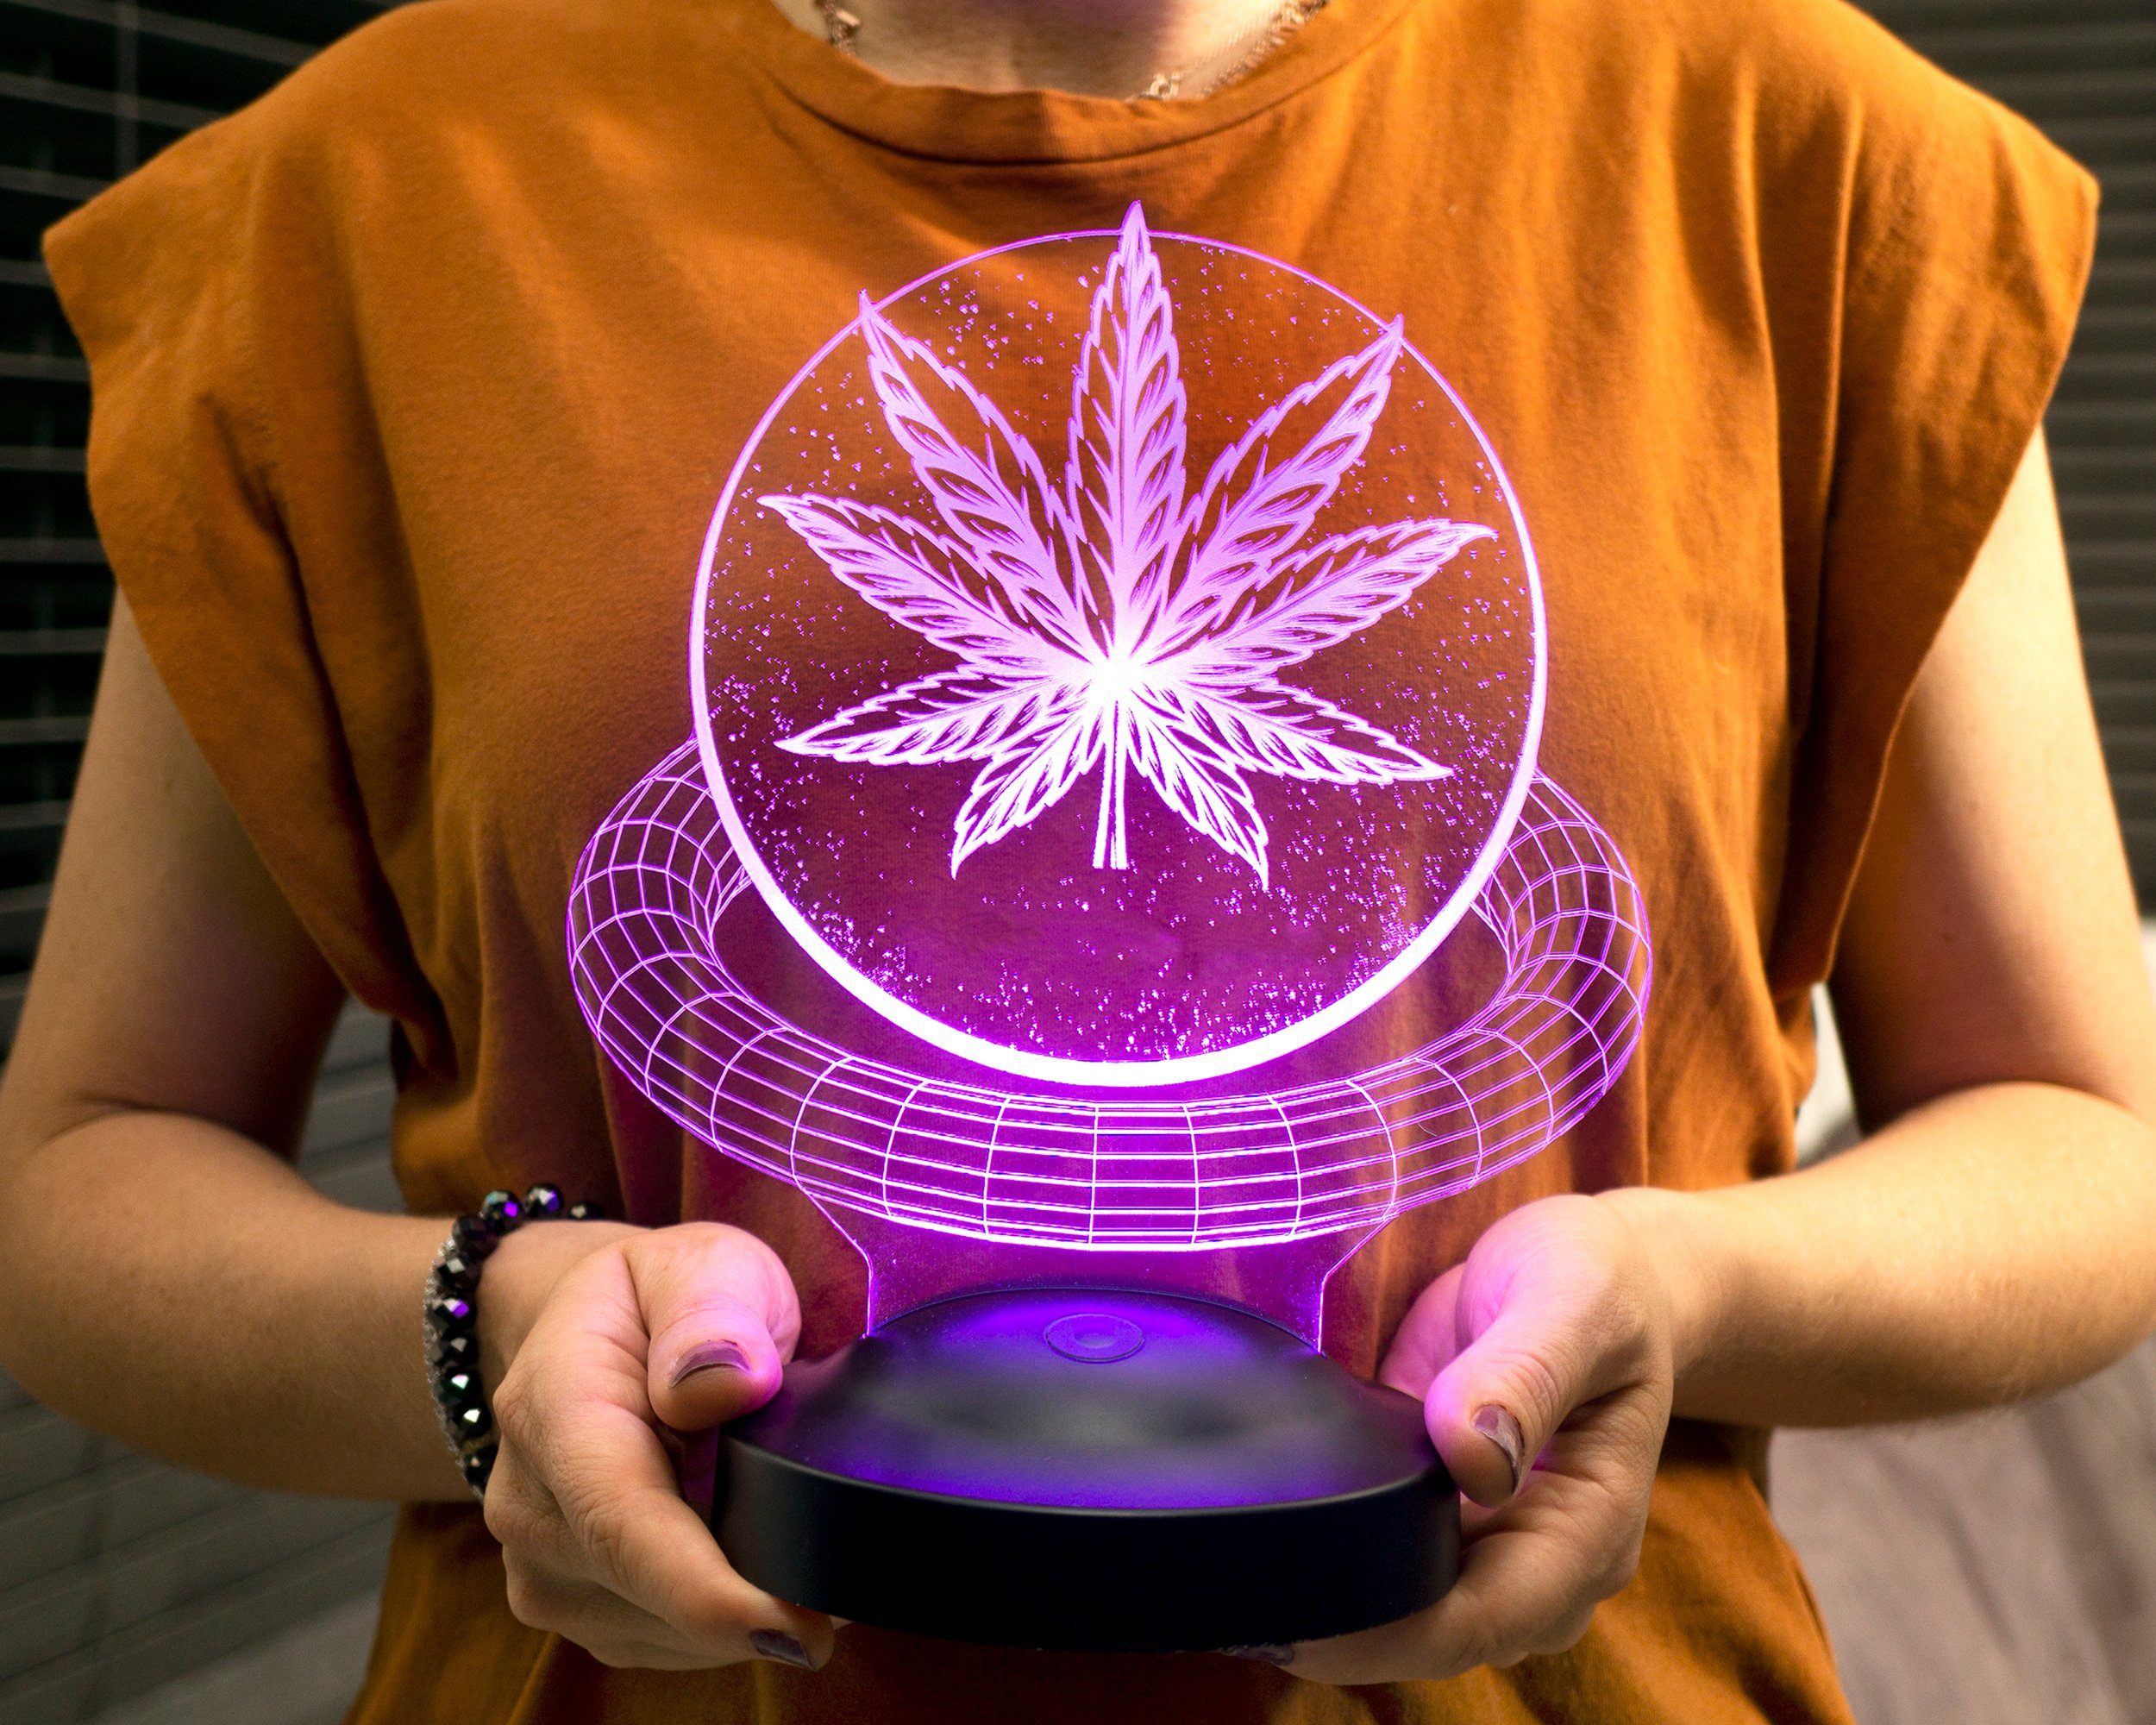 integriert, LED 7 Fans, Cannabis Fans Leuchte Farben Geschenkelampe Cannabis fest Cannabis Nachtlicht für 3D Geschenk Baum Weed Lustiges Nachttischlampe Geschenk,